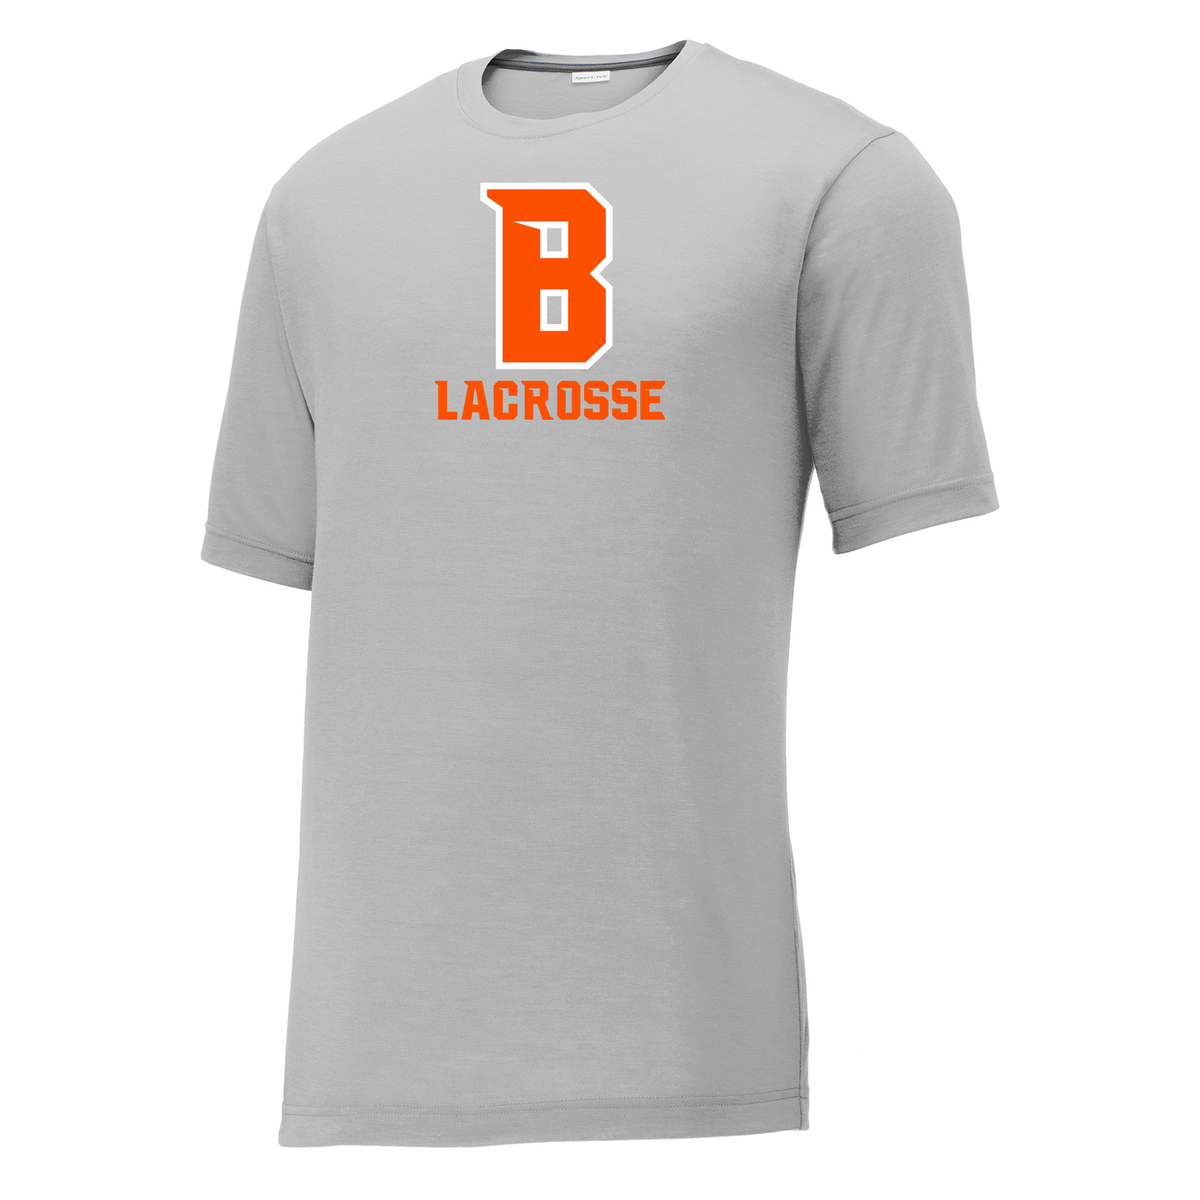 Babylon Lacrosse CottonTouch Performance T-Shirt